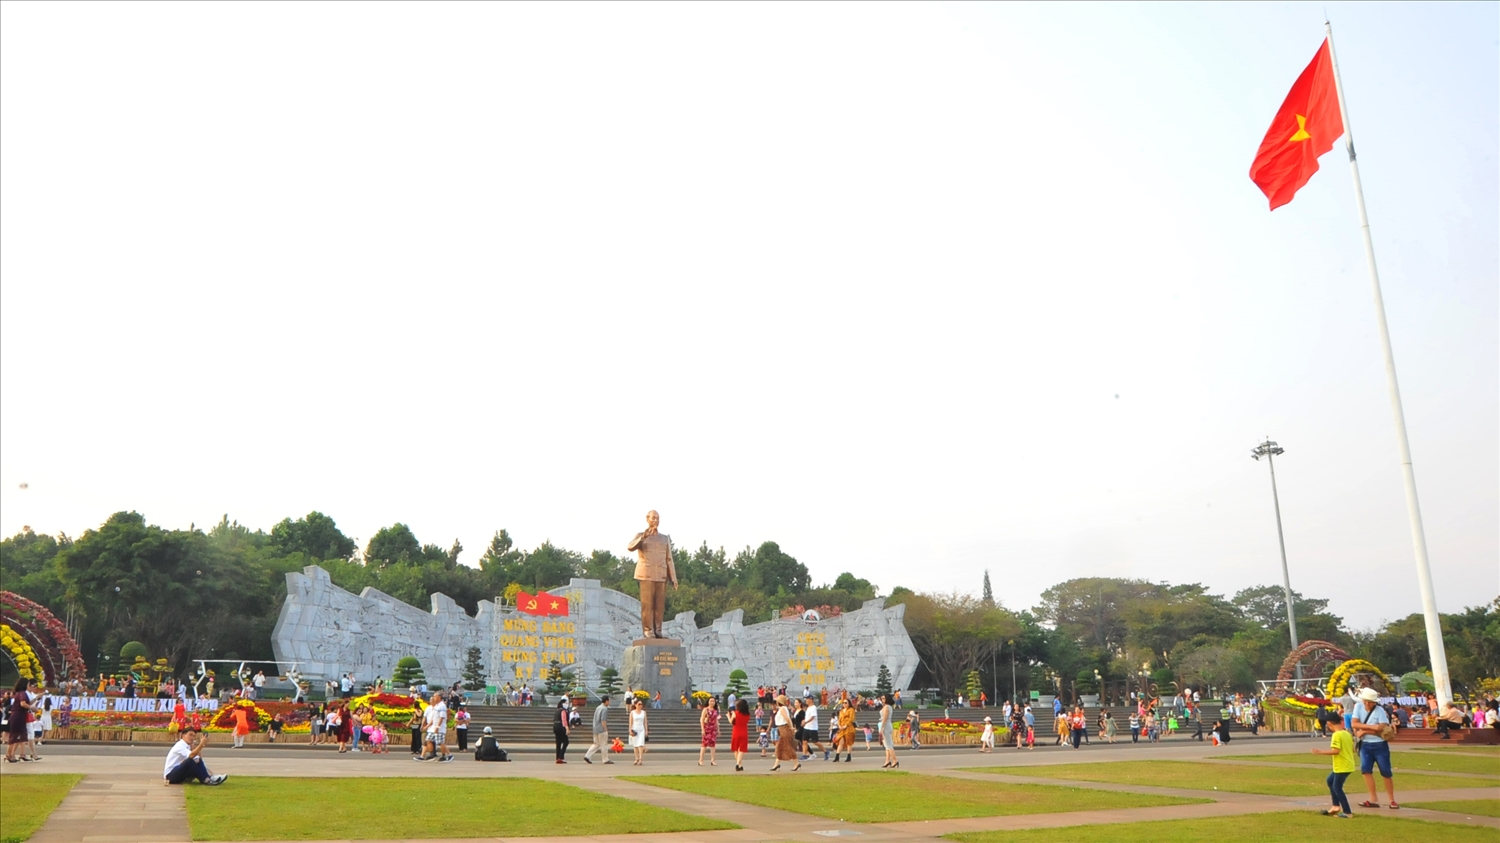 Quảng trường Đại Đoàn Kết nằm trung tâm Tp. Pleiku, là nơi tổ chức các sự kiện chính trị, kinh tế, văn hóa lớn của tỉnh Gia Lai